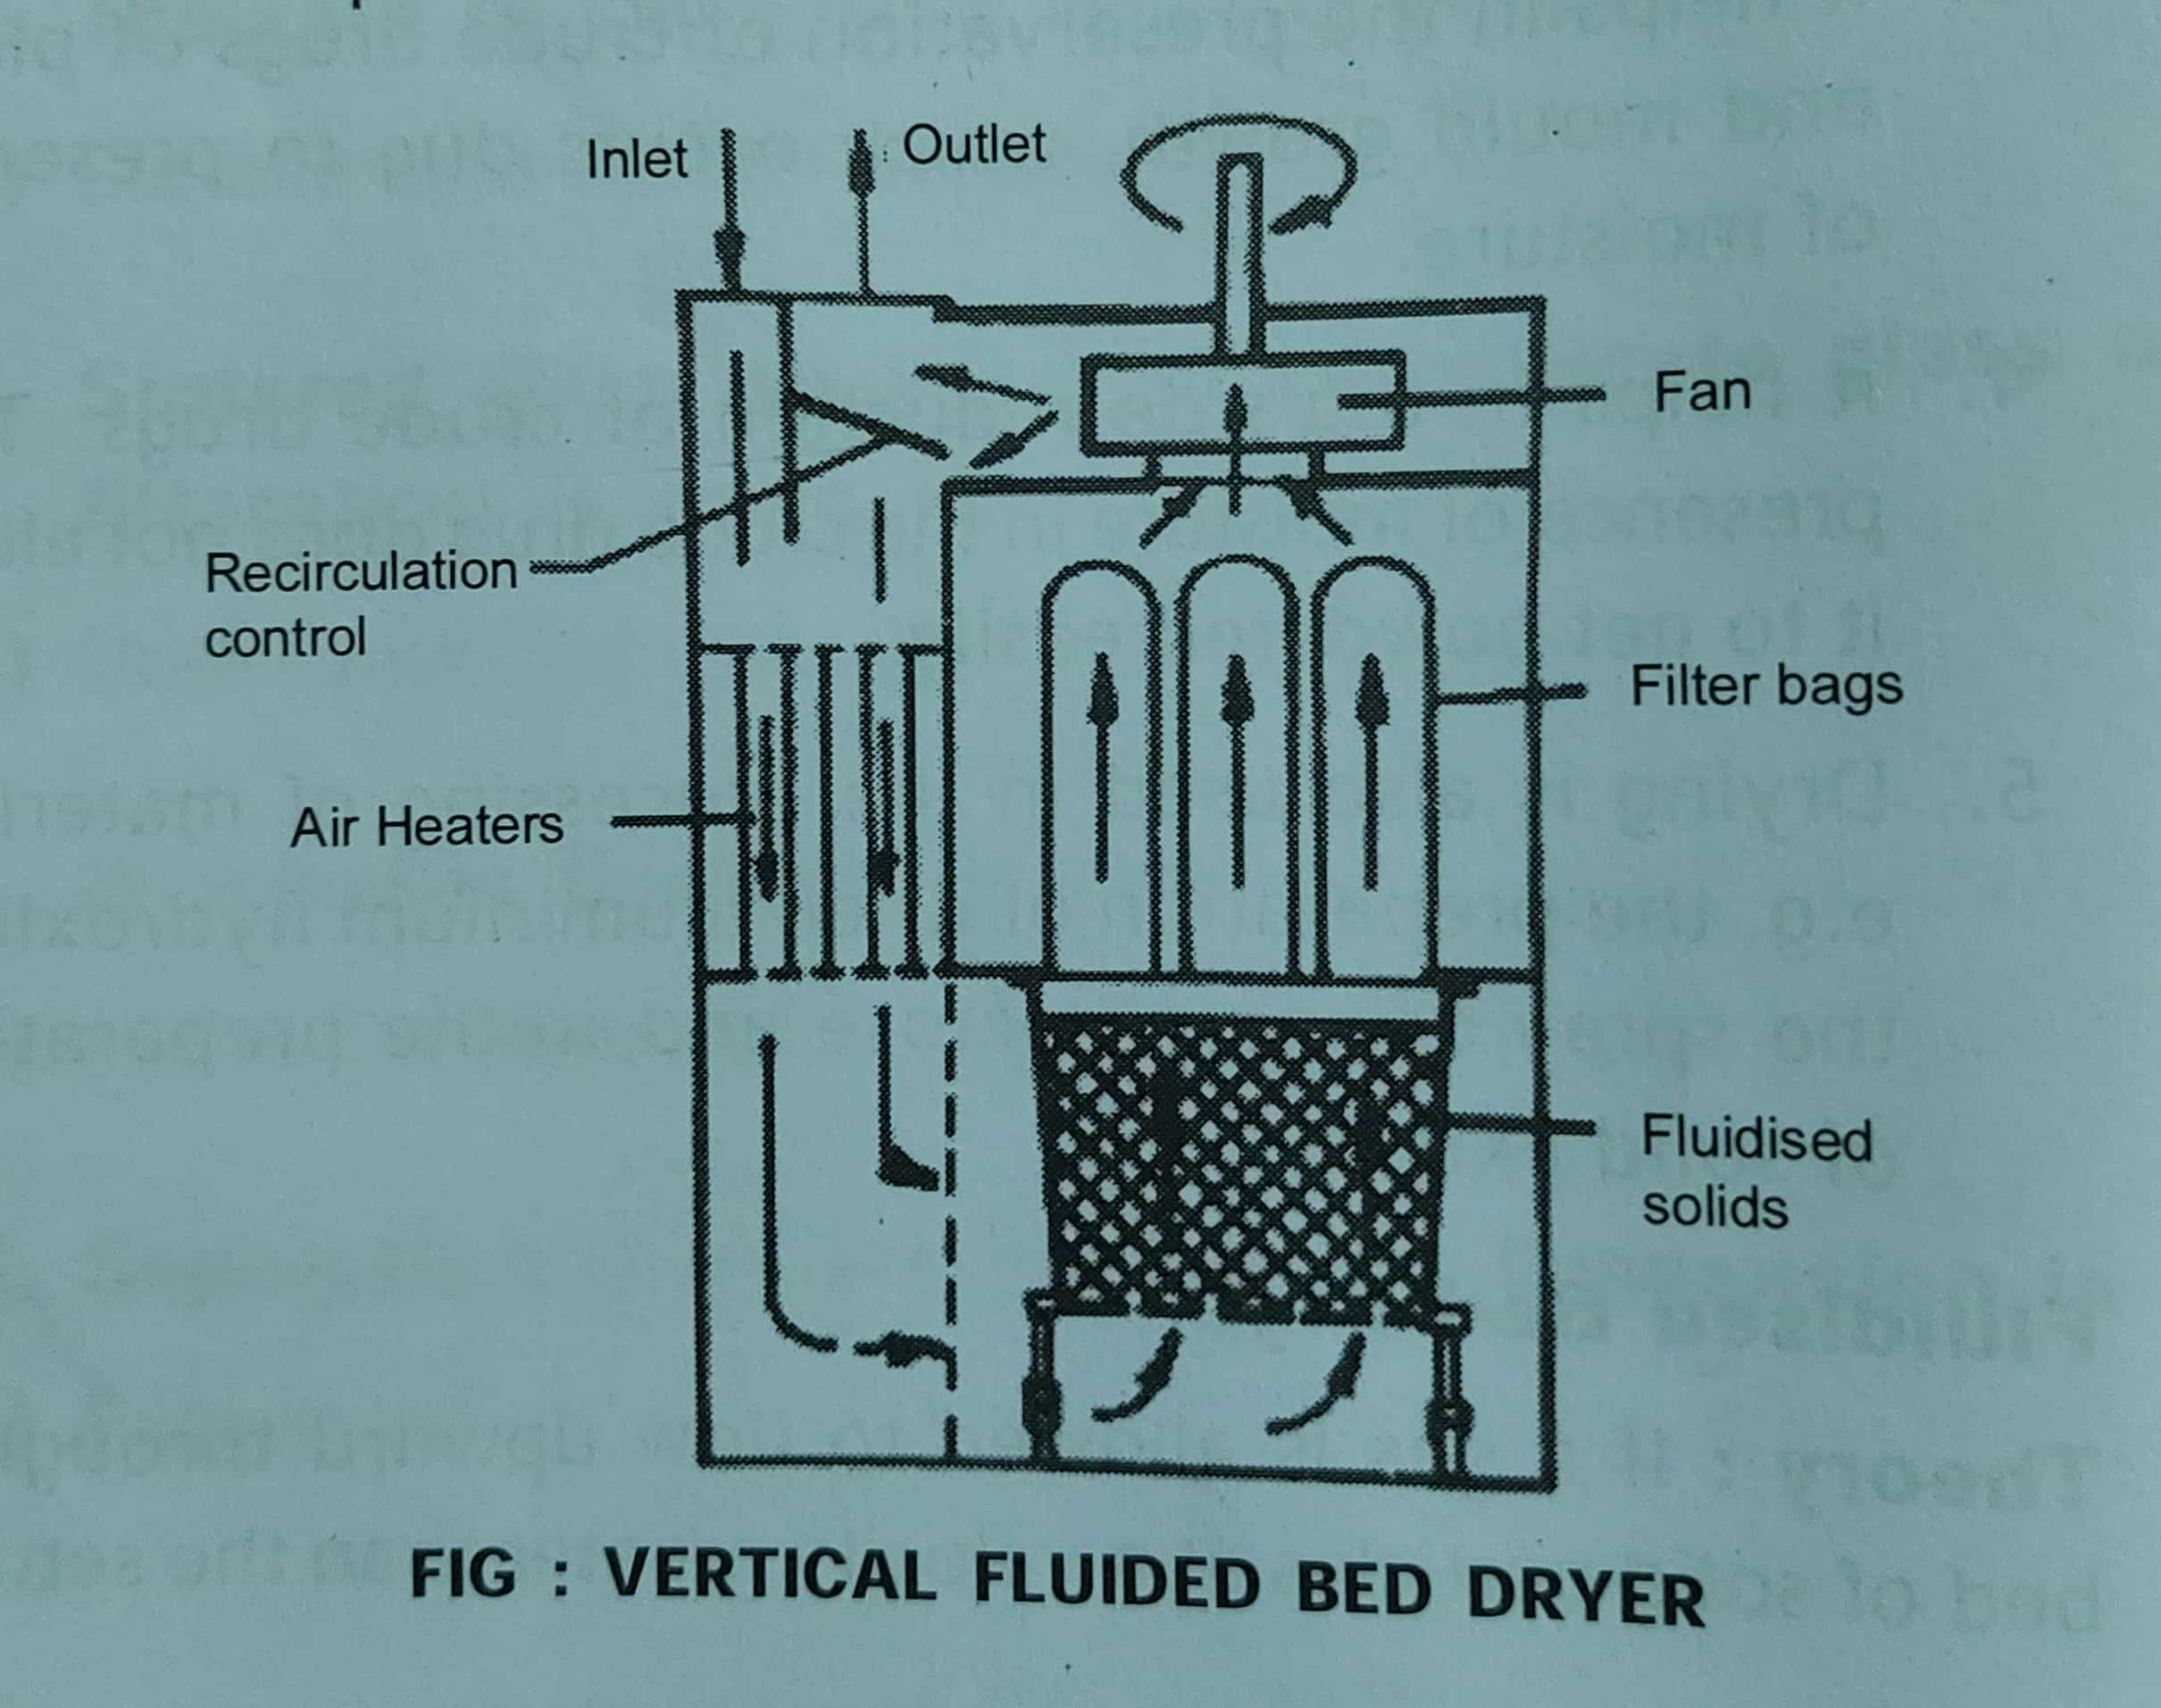 Fluid bed dryer